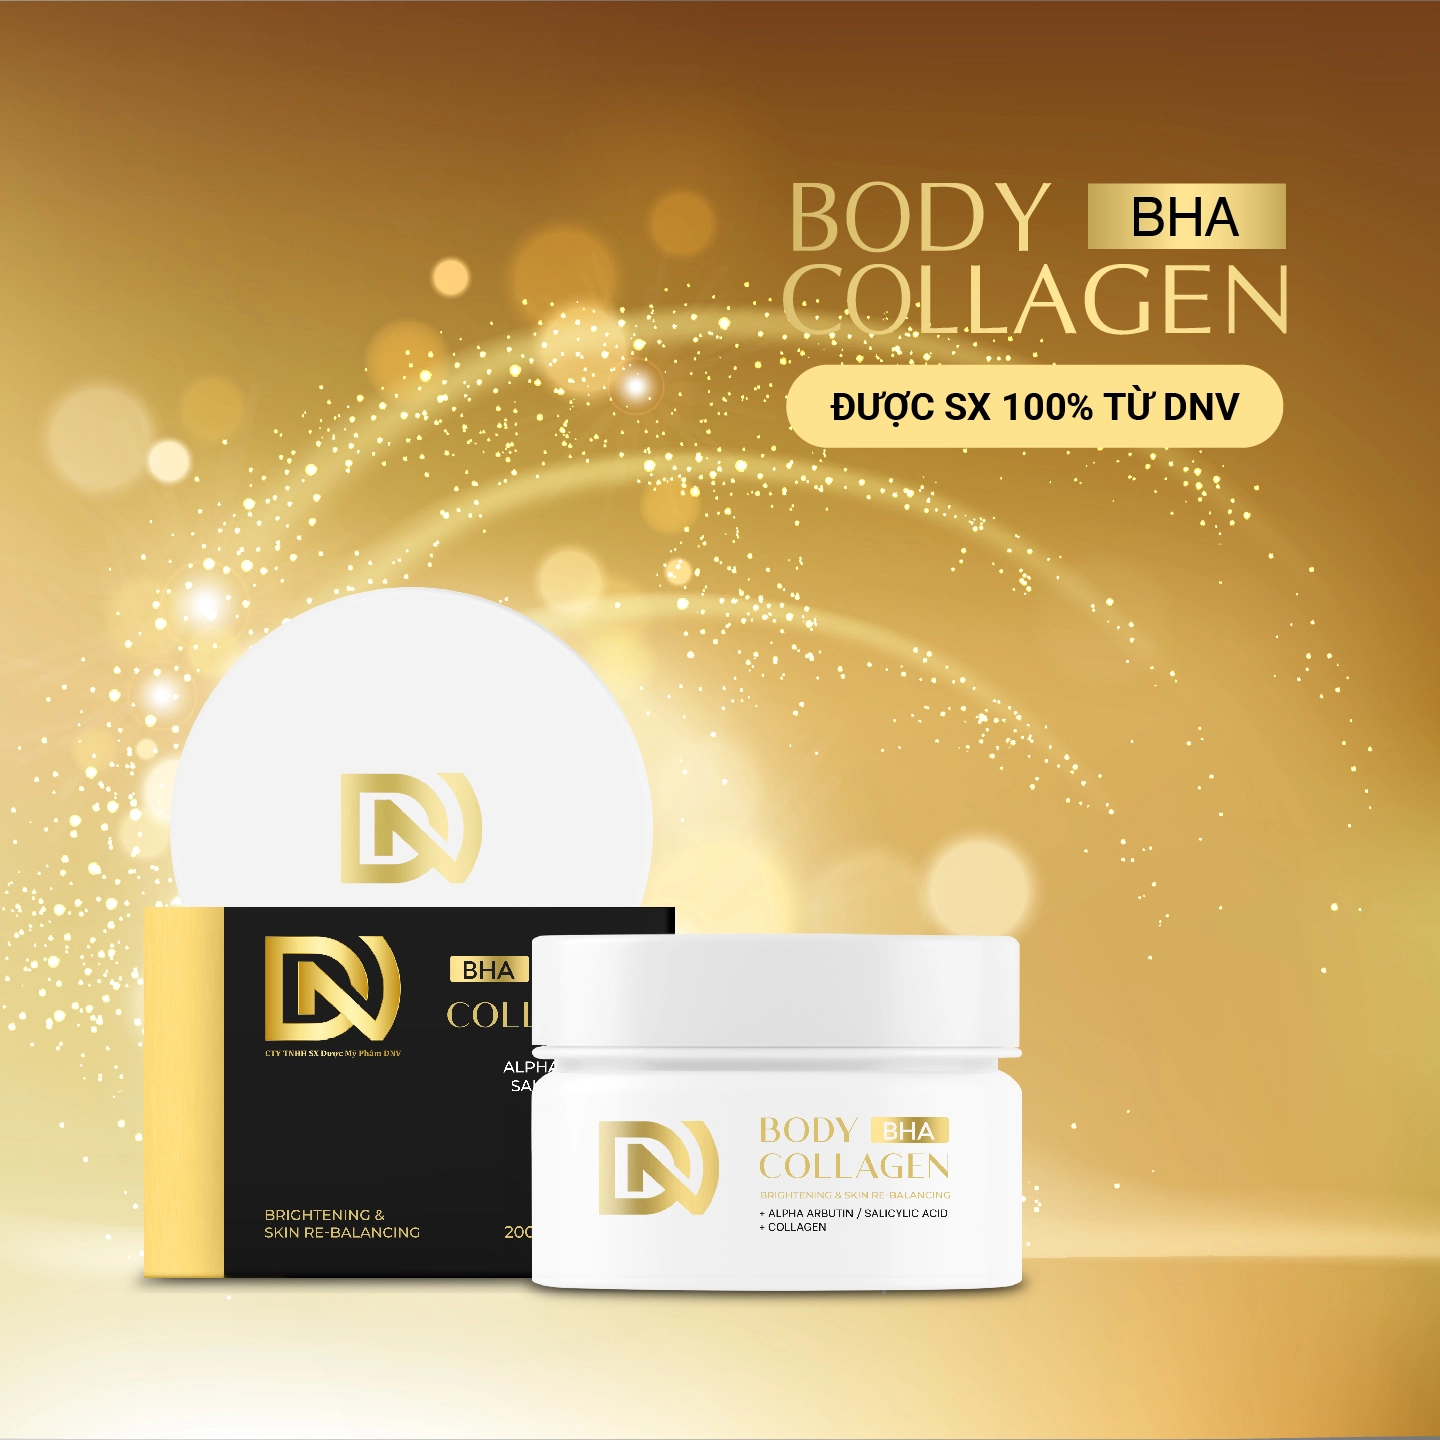 Sản phẩm Body Collagen có công dụng dưỡng trắng da hiệu quả